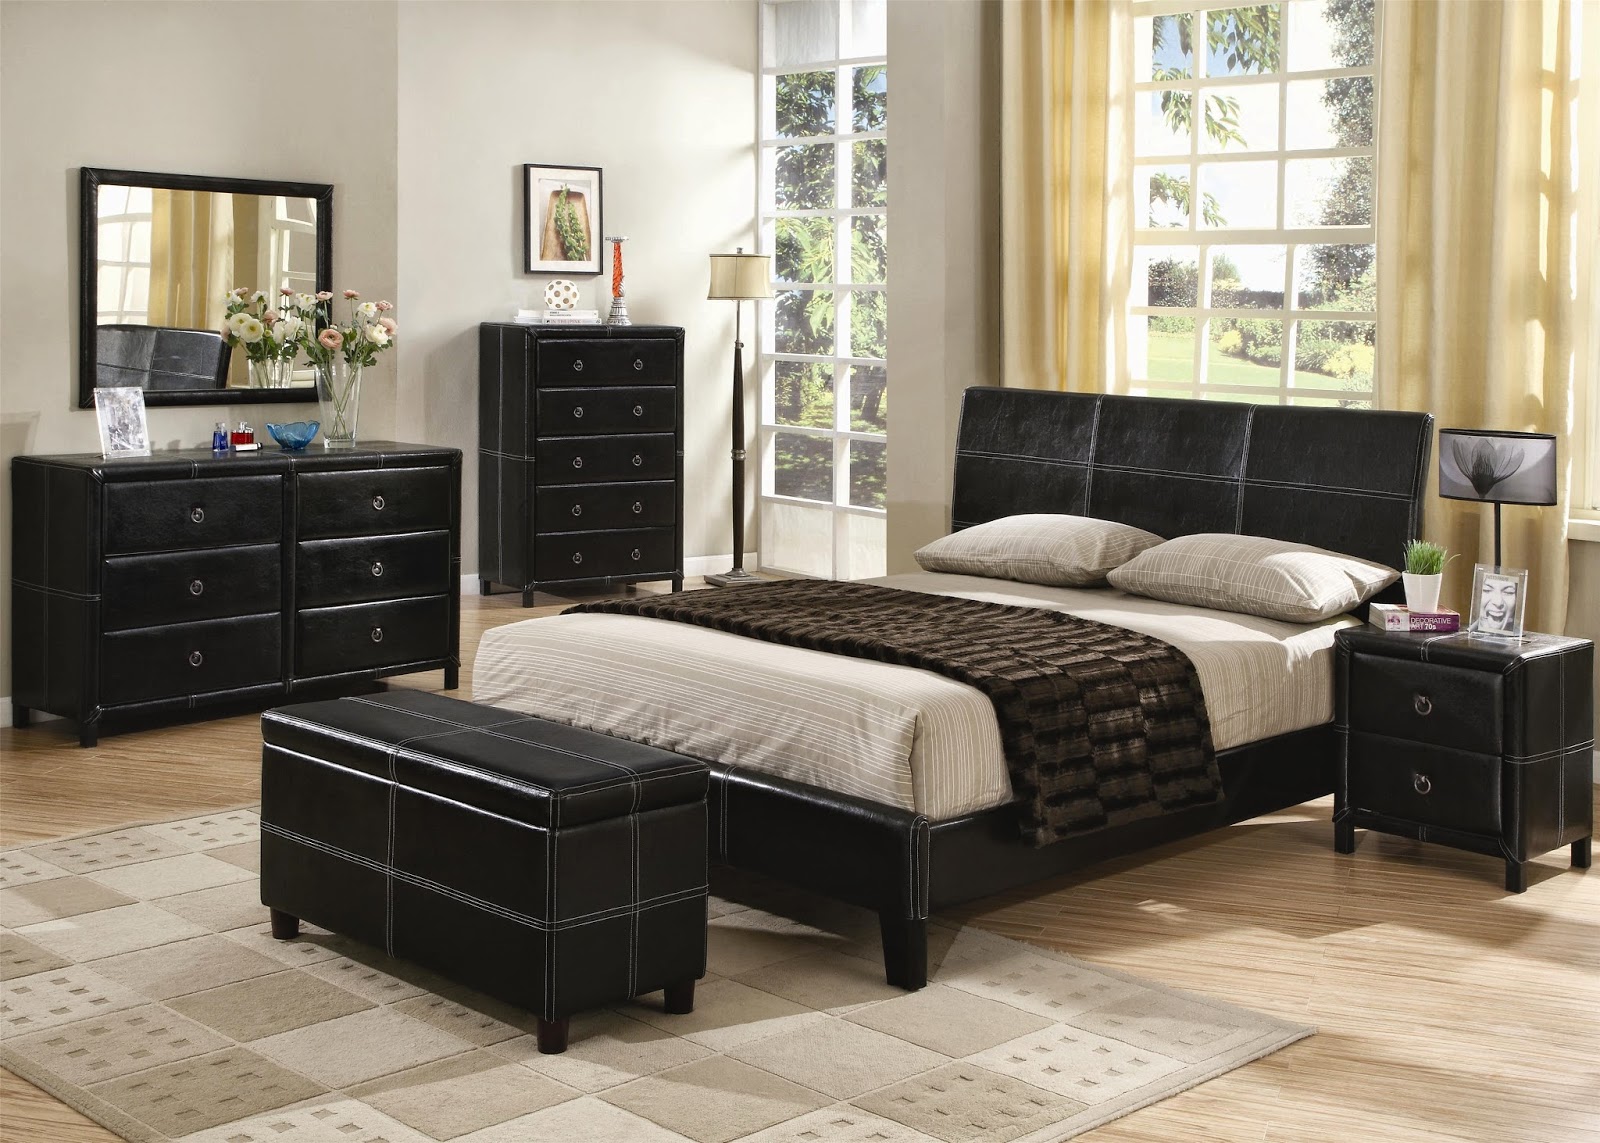 Black Master Bedroom Furniture